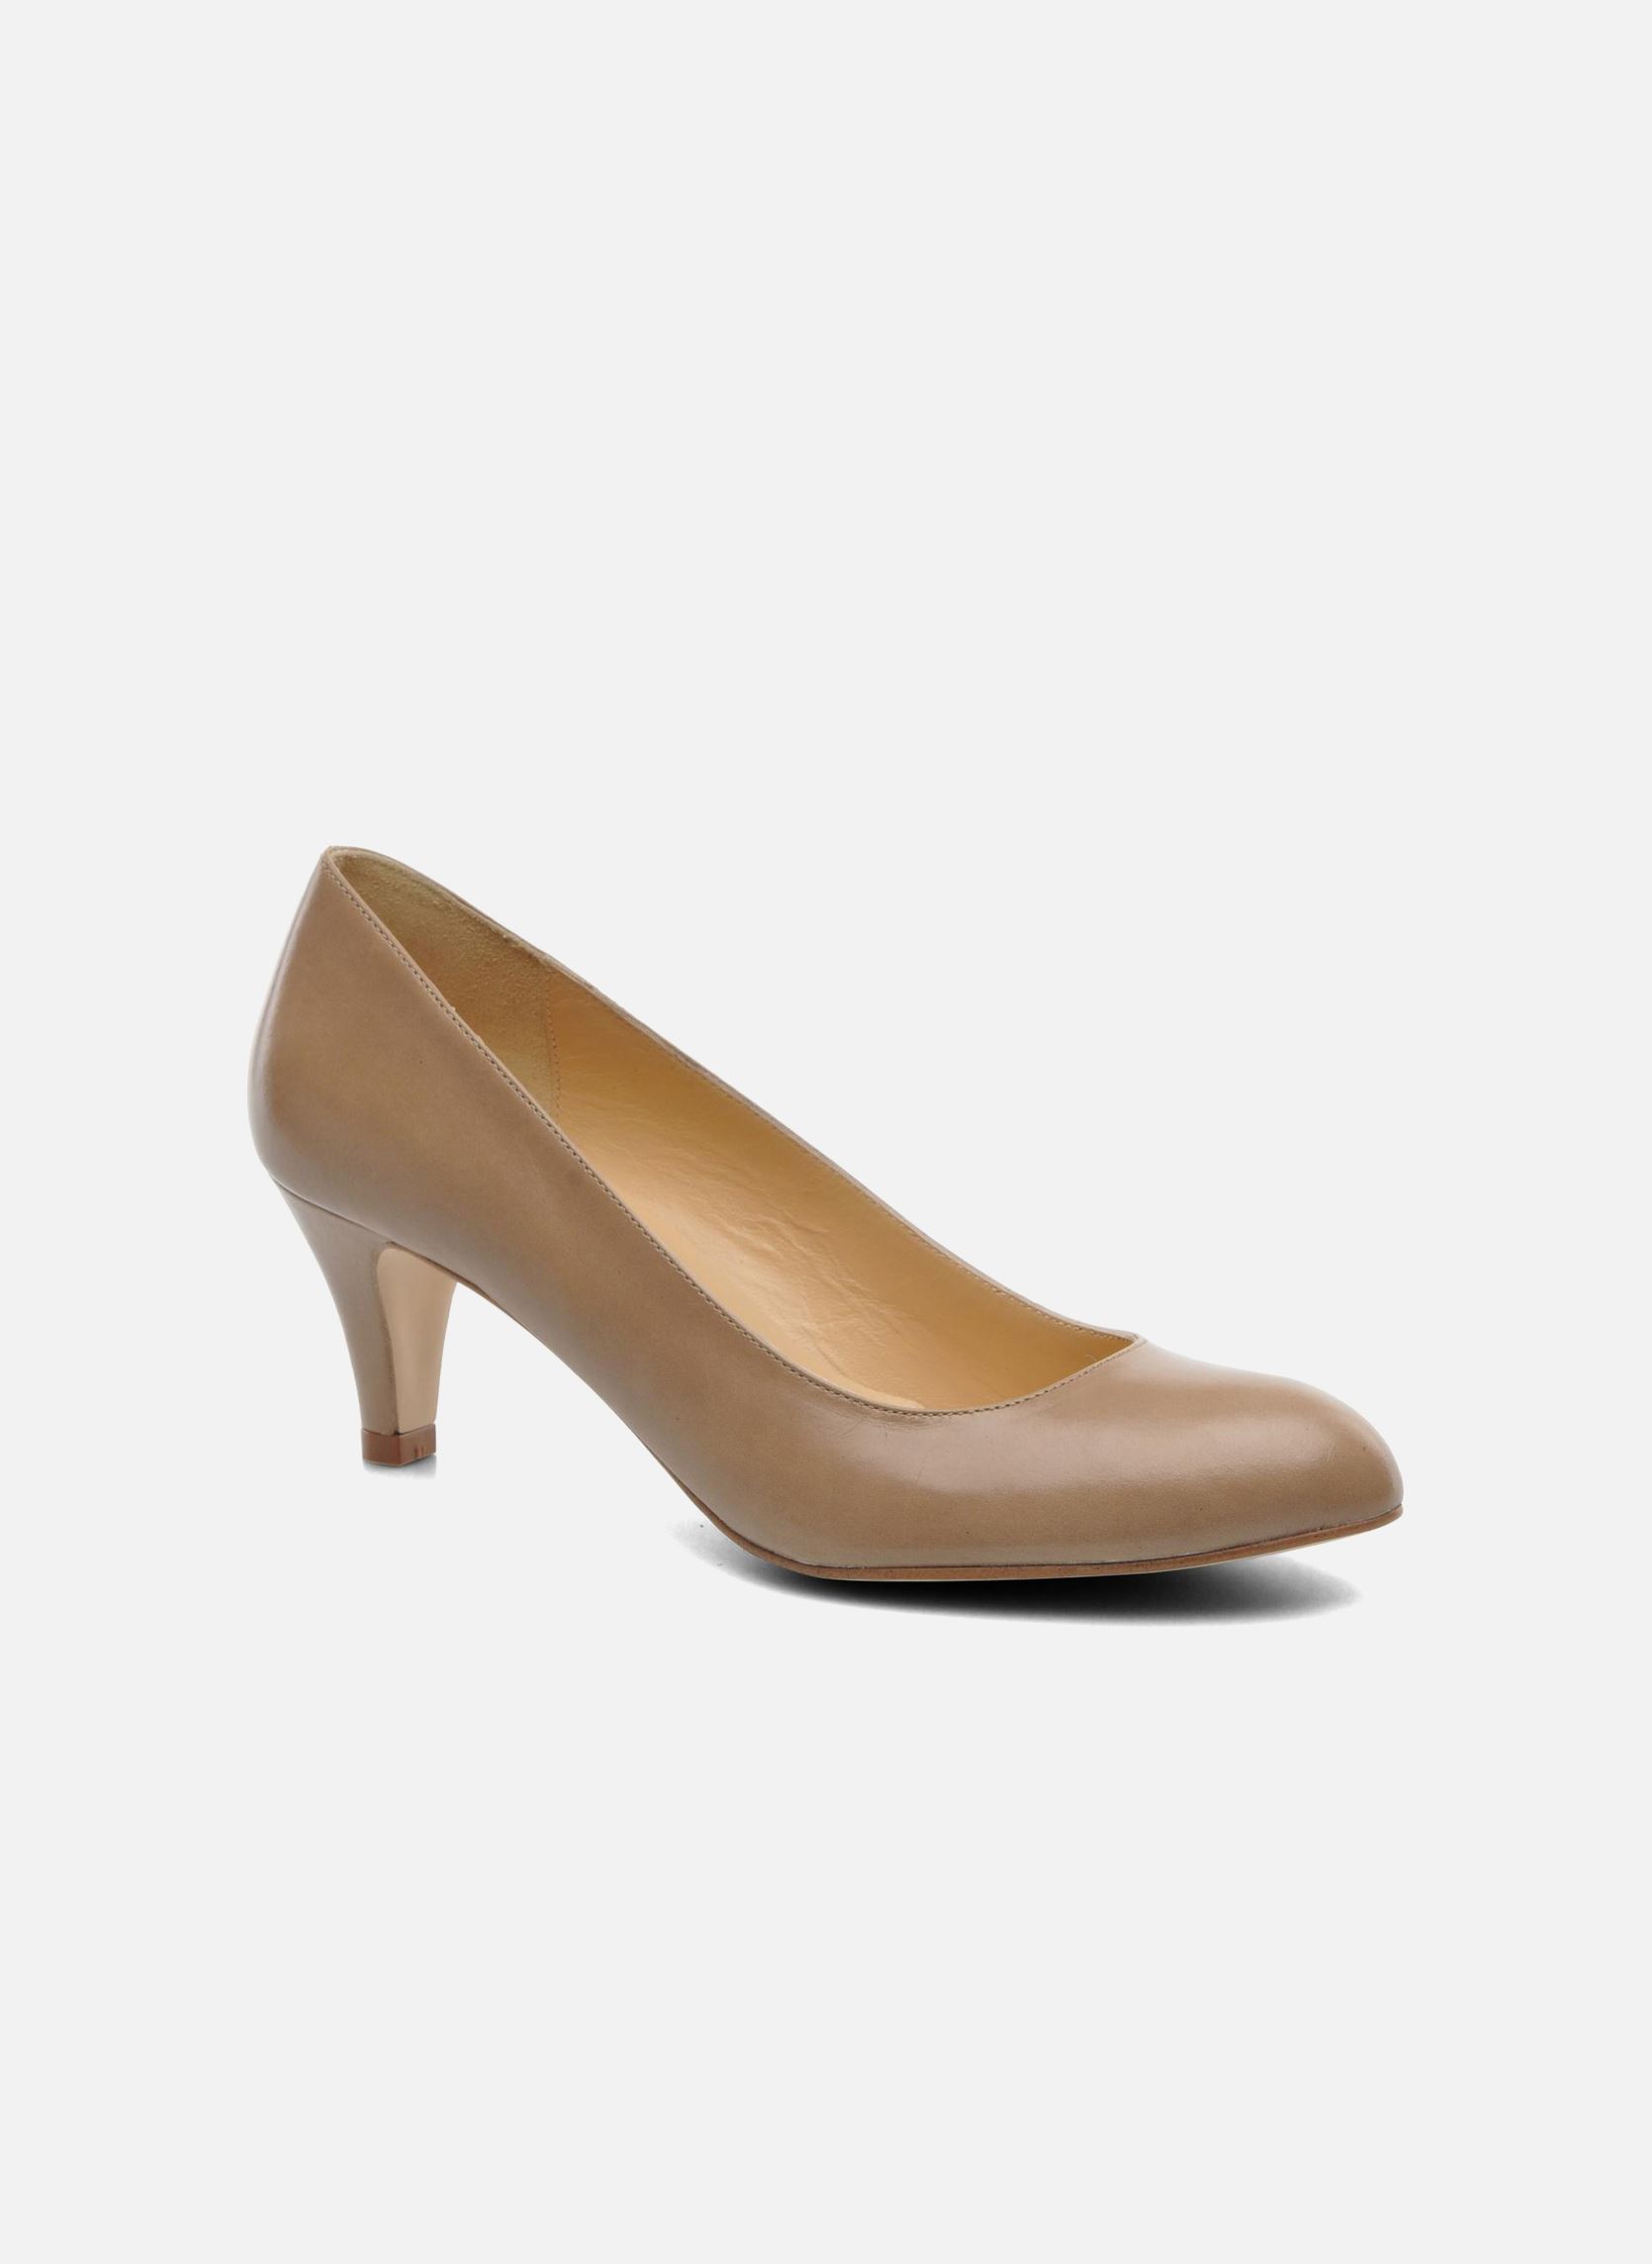 Jonak Issine High heels in Beige at Sarenza.co.uk (210113)